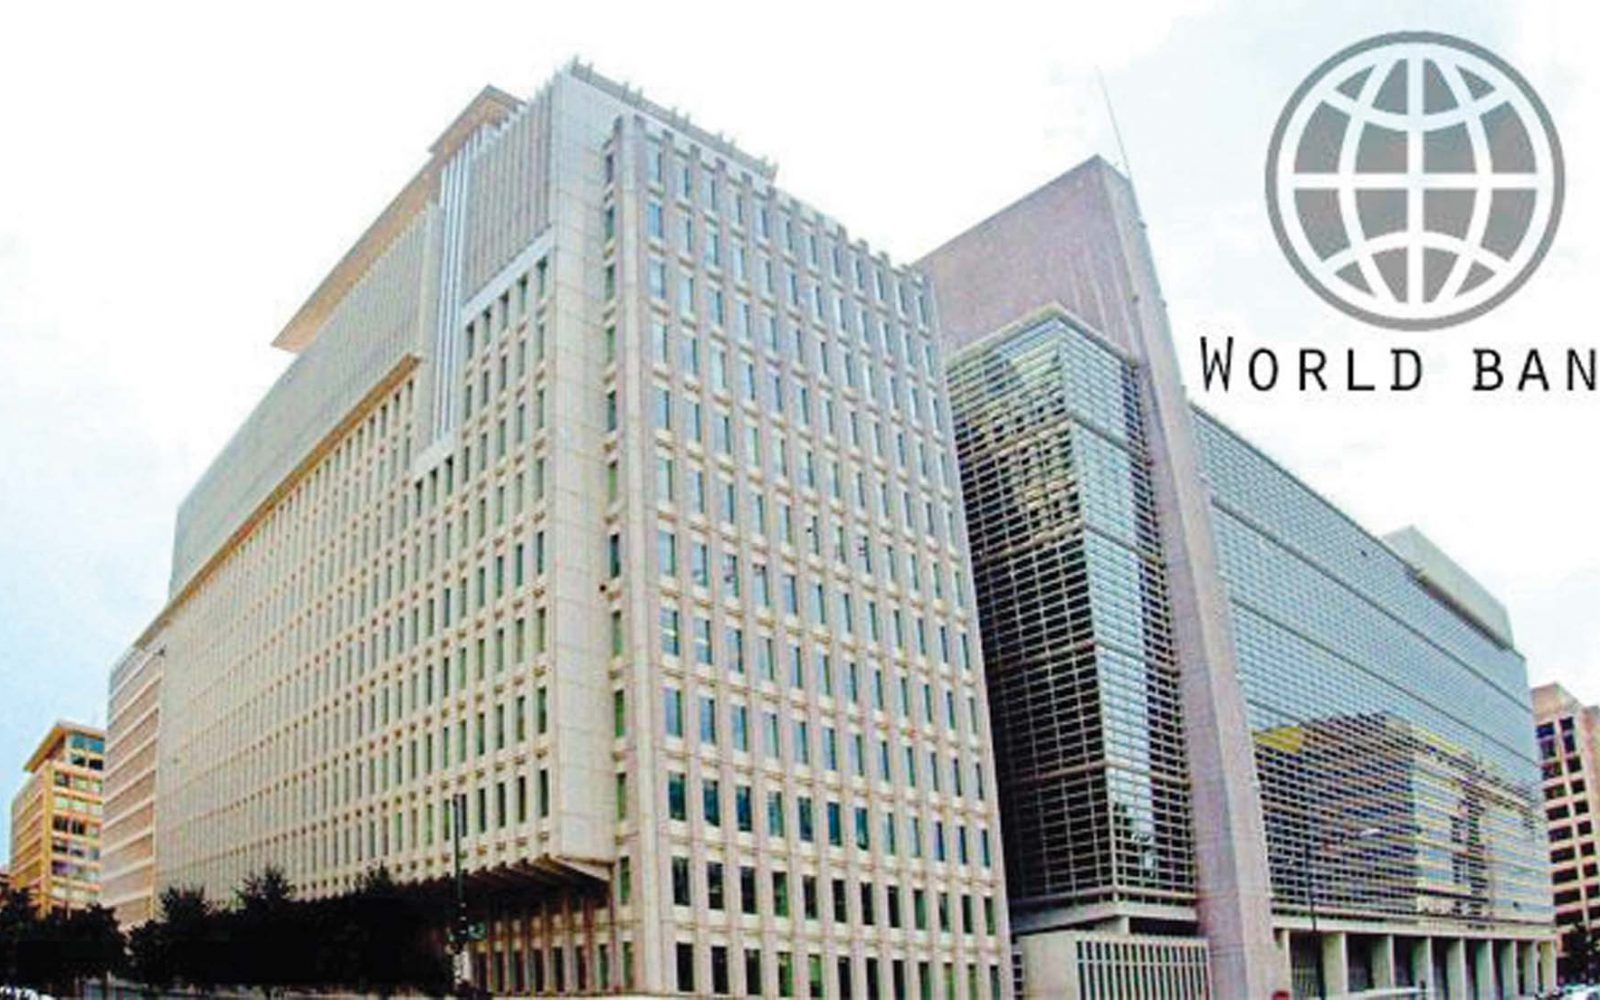 البنك الدولي: مصر ستسجل ثانى أعلى معدل نمو بالشرق الأوسط فى العام المالى الجاري - جريدة المال